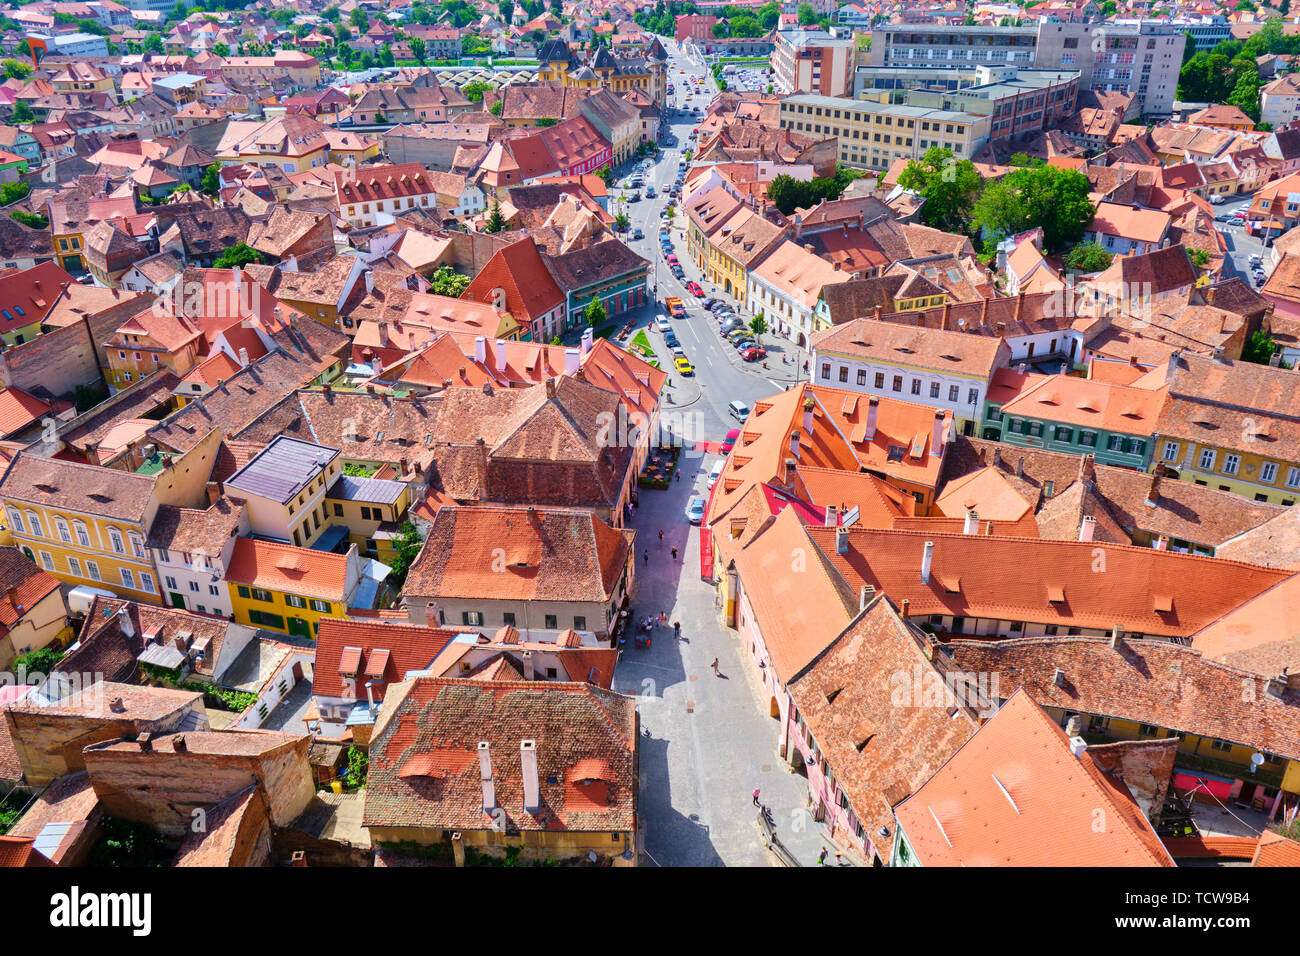 Vue aérienne de Sibiu maisons traditionnelles avec des toits brun-orangé et une rue au milieu, près de la zone piétonne de la ville/centre. Voir à partir de la montre Banque D'Images